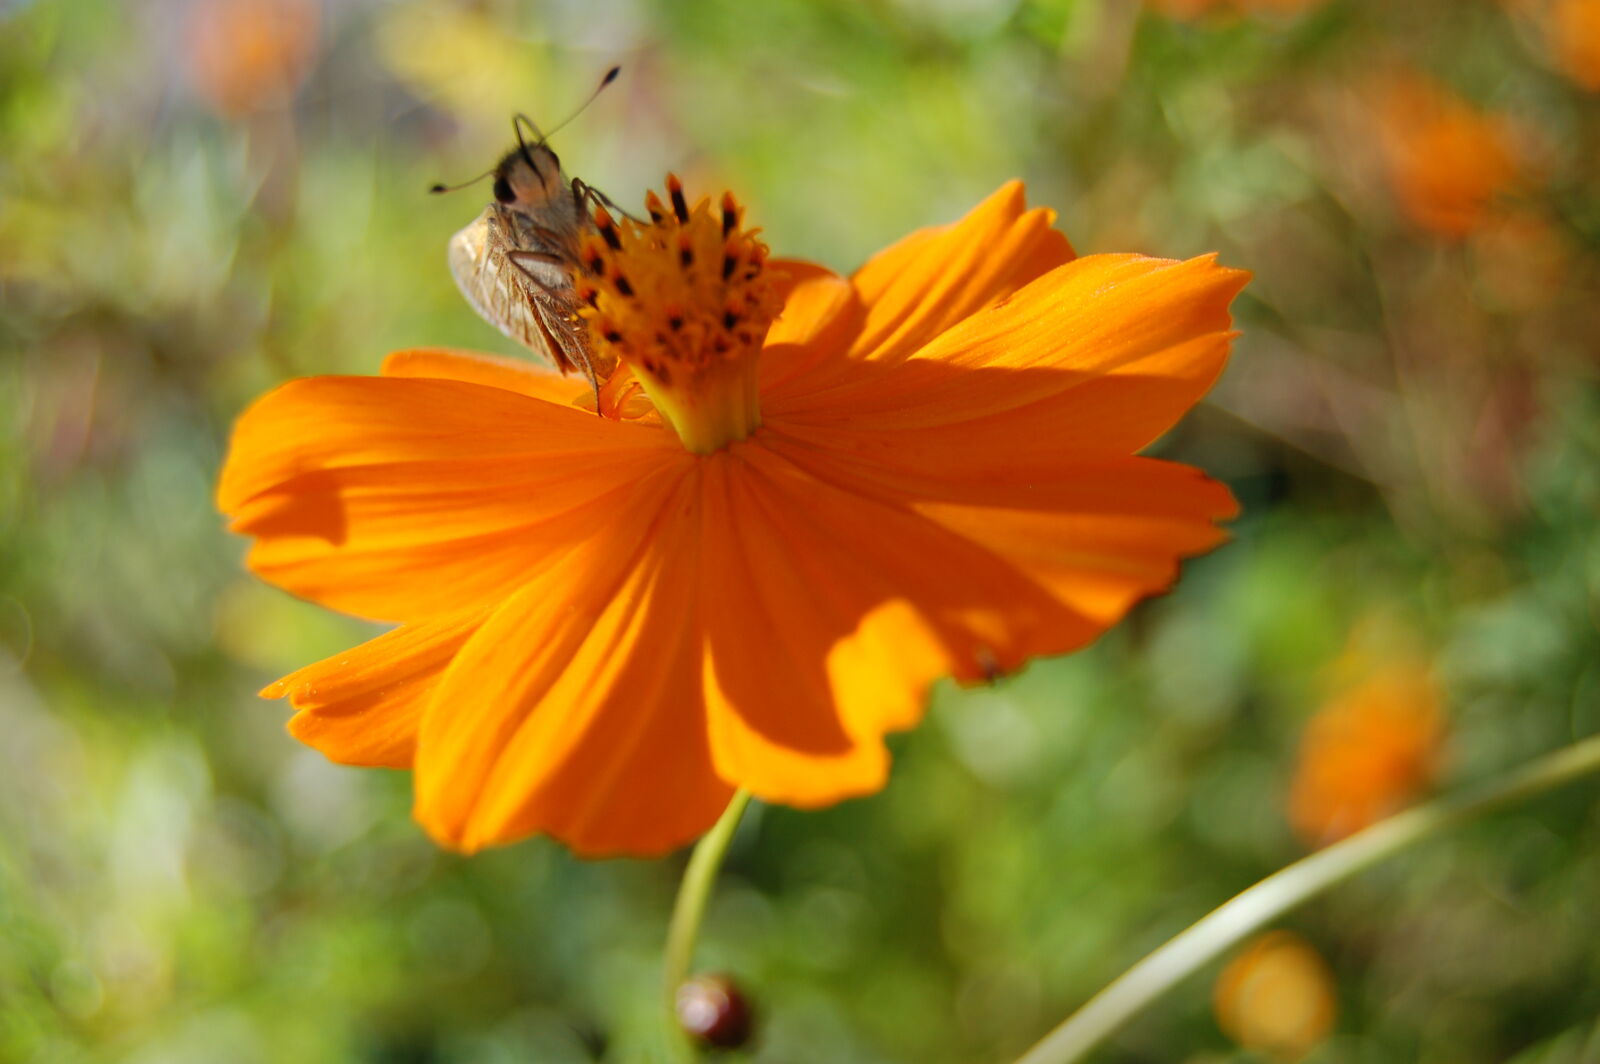 AF-S DX Zoom-Nikkor 18-55mm f/3.5-5.6G ED sample photo. Bee, insect, orange, orange photography